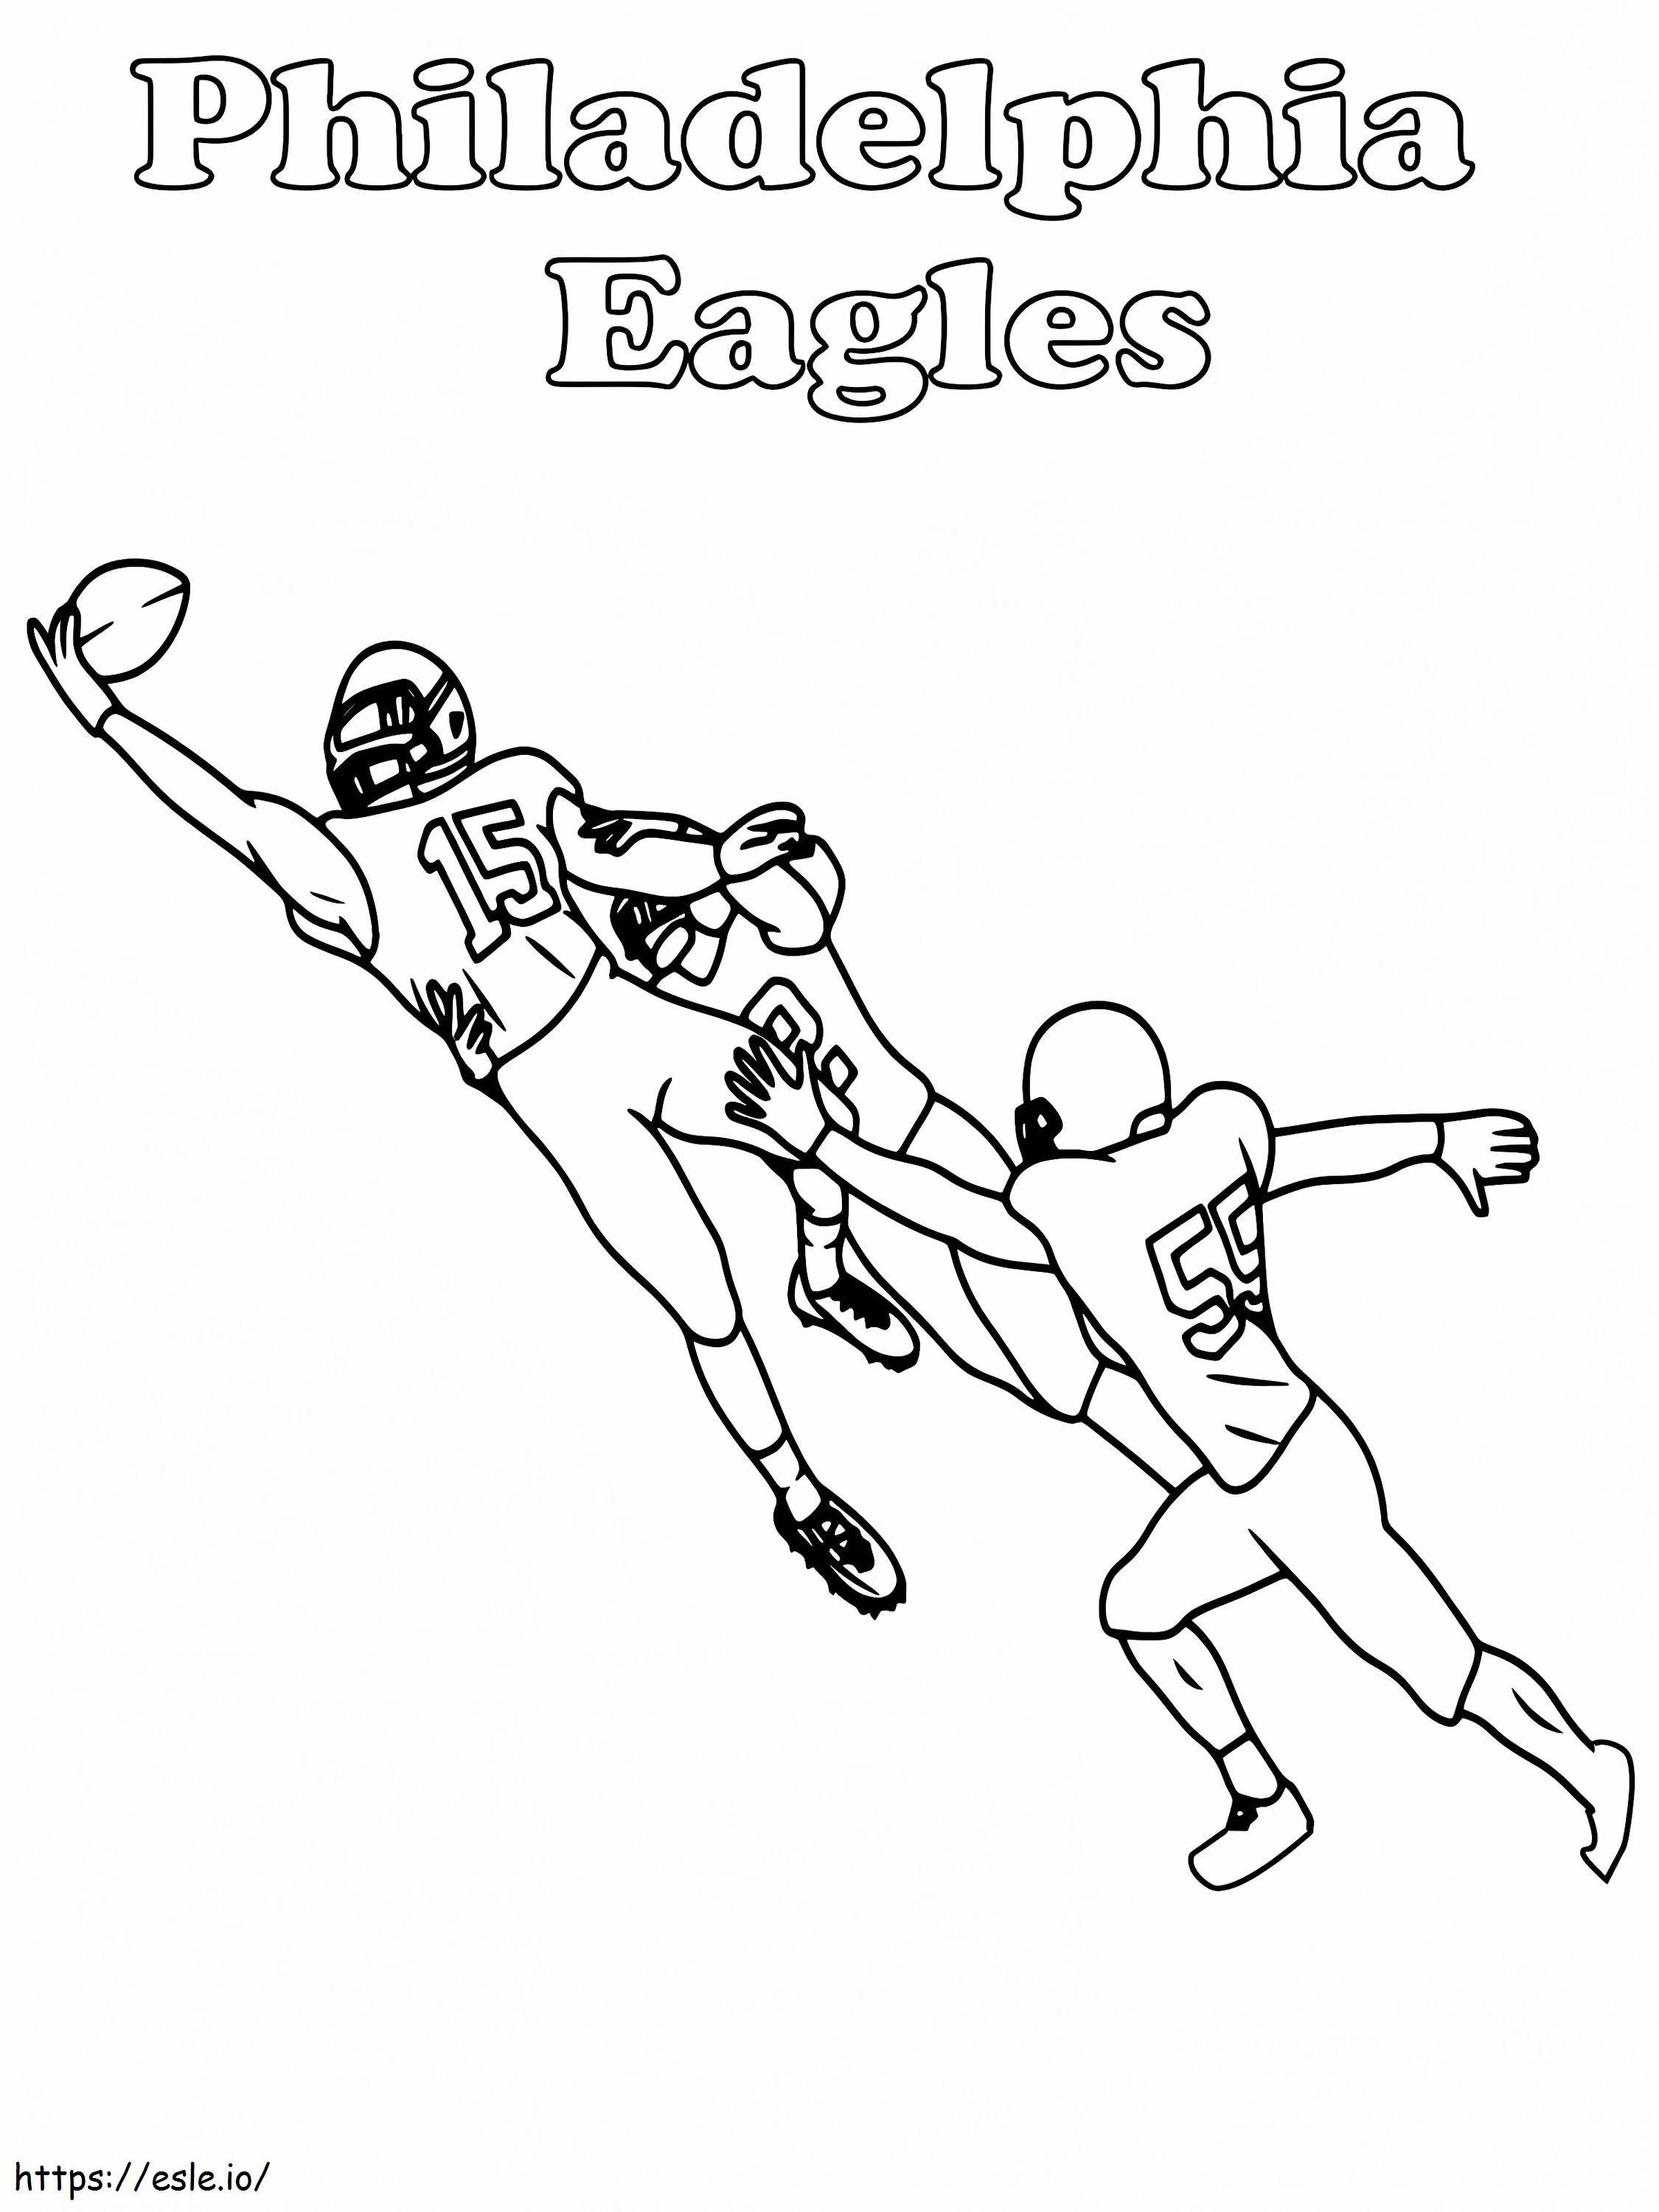 Spielerfang der Philadelphia Eagles ausmalbilder